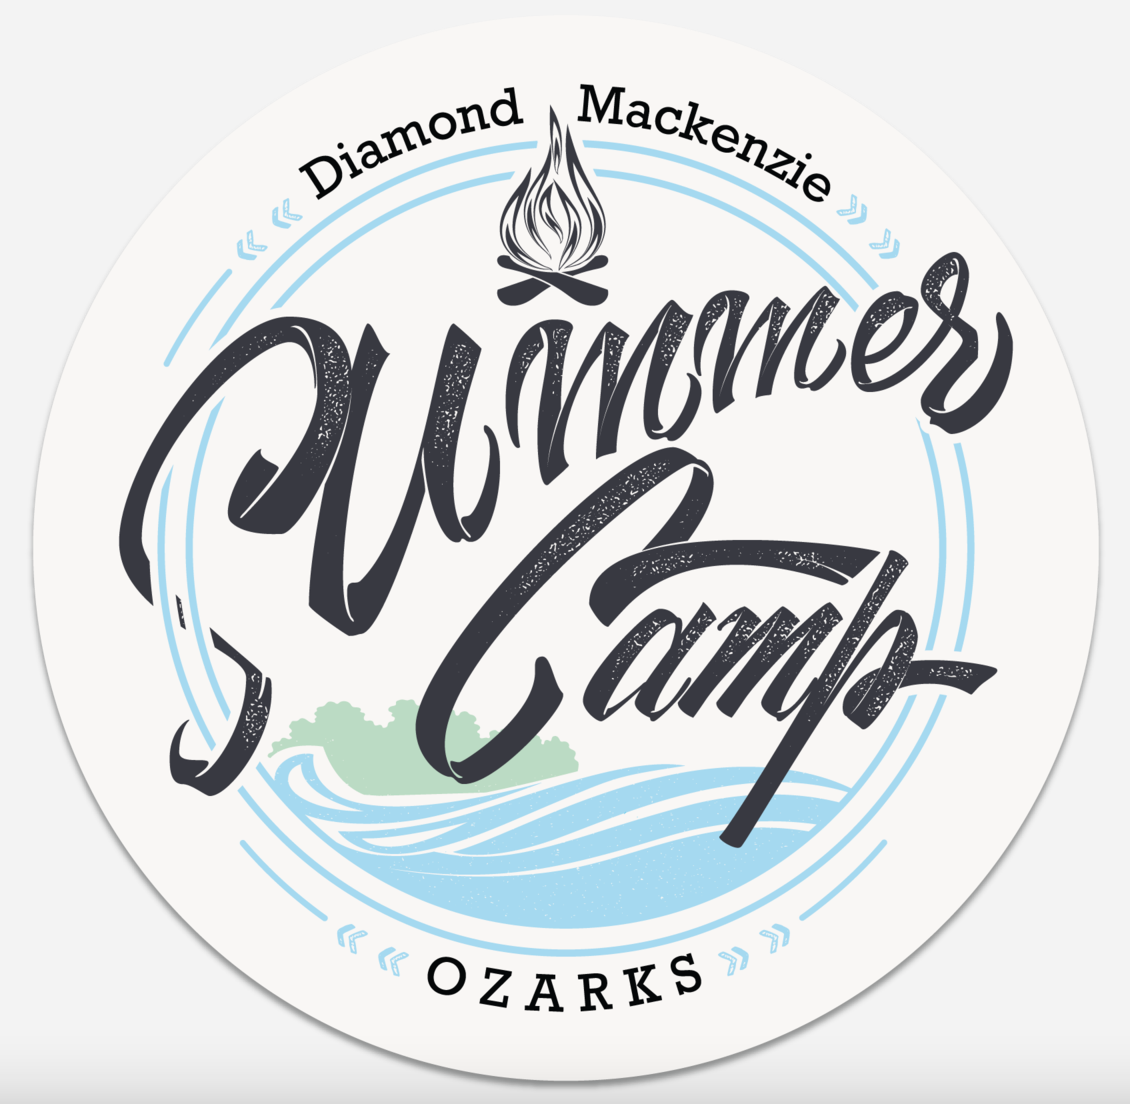 Diamond Mackenzie Summer Camp